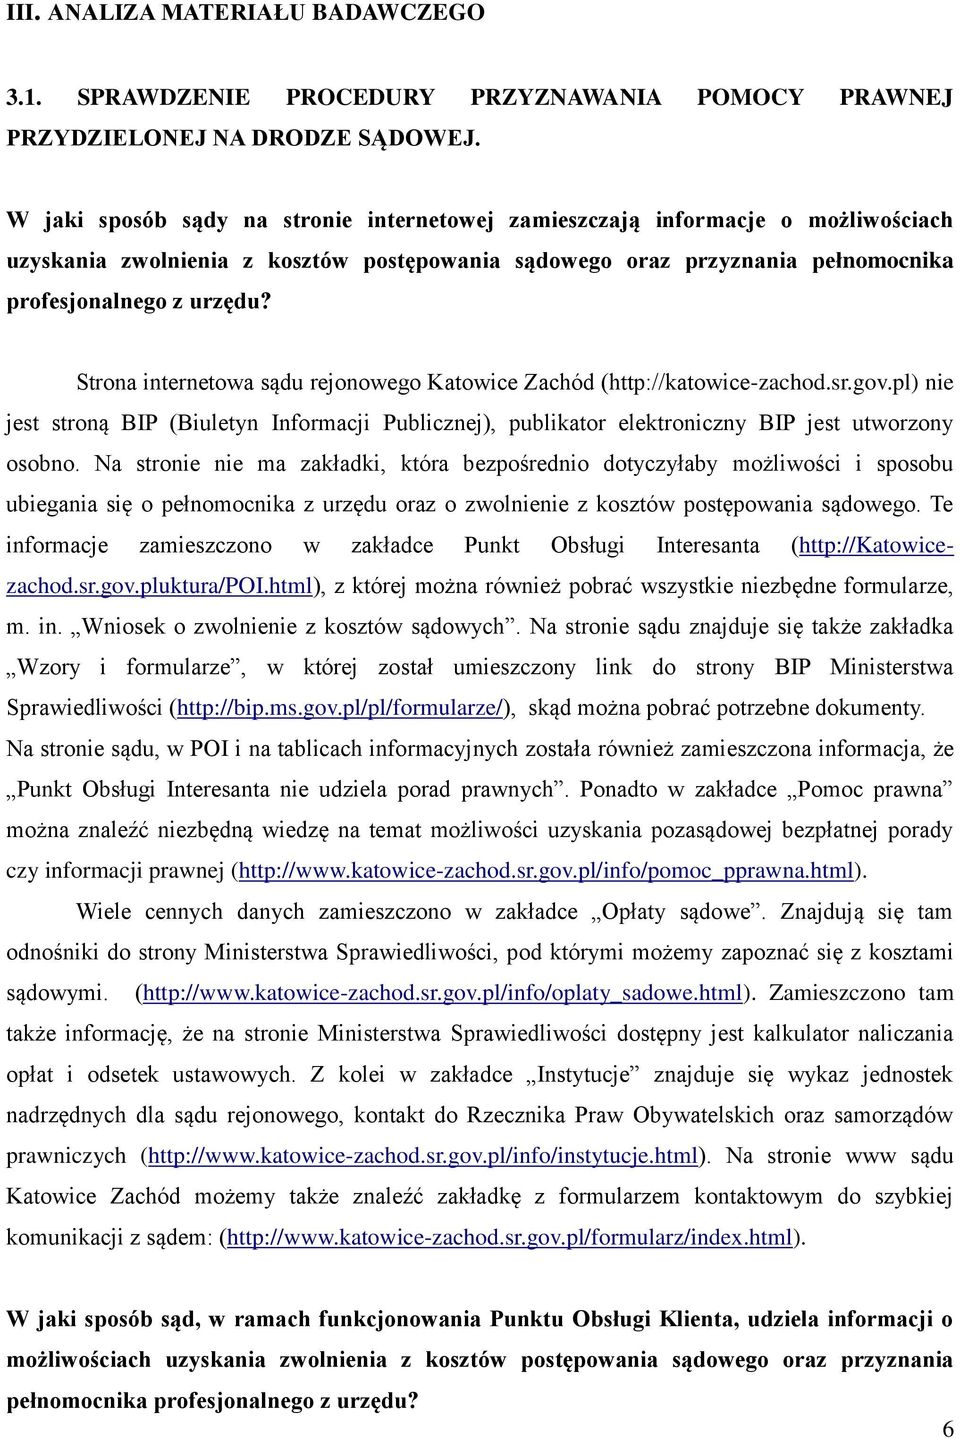 Strona internetowa sądu rejonowego Katowice Zachód (http://katowice-zachod.sr.gov.pl) nie jest stroną BIP (Biuletyn Informacji Publicznej), publikator elektroniczny BIP jest utworzony osobno.